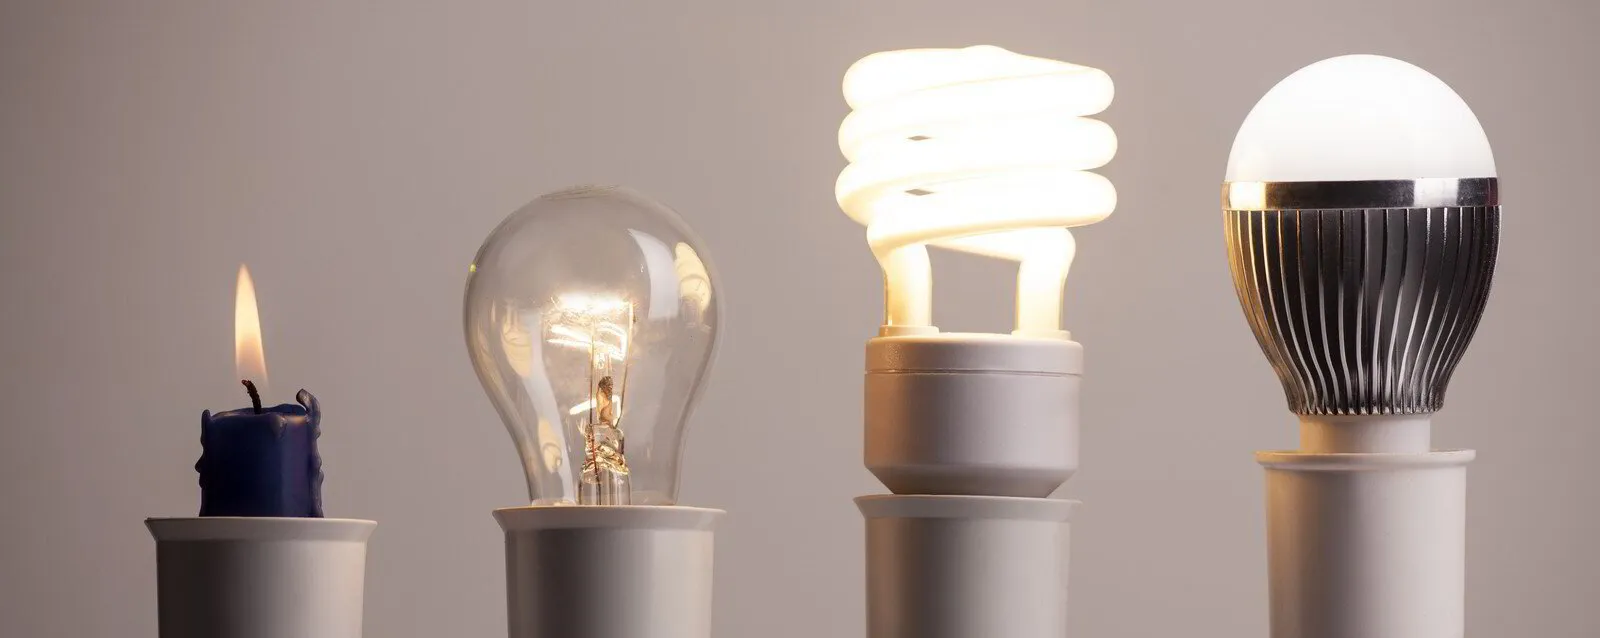 10 puntos clave que debes conocer sobre la iluminación led